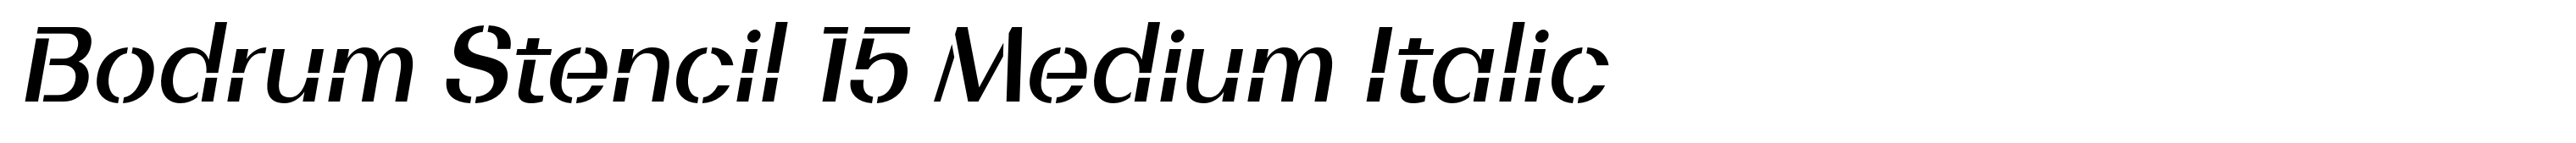 Bodrum Stencil 15 Medium Italic